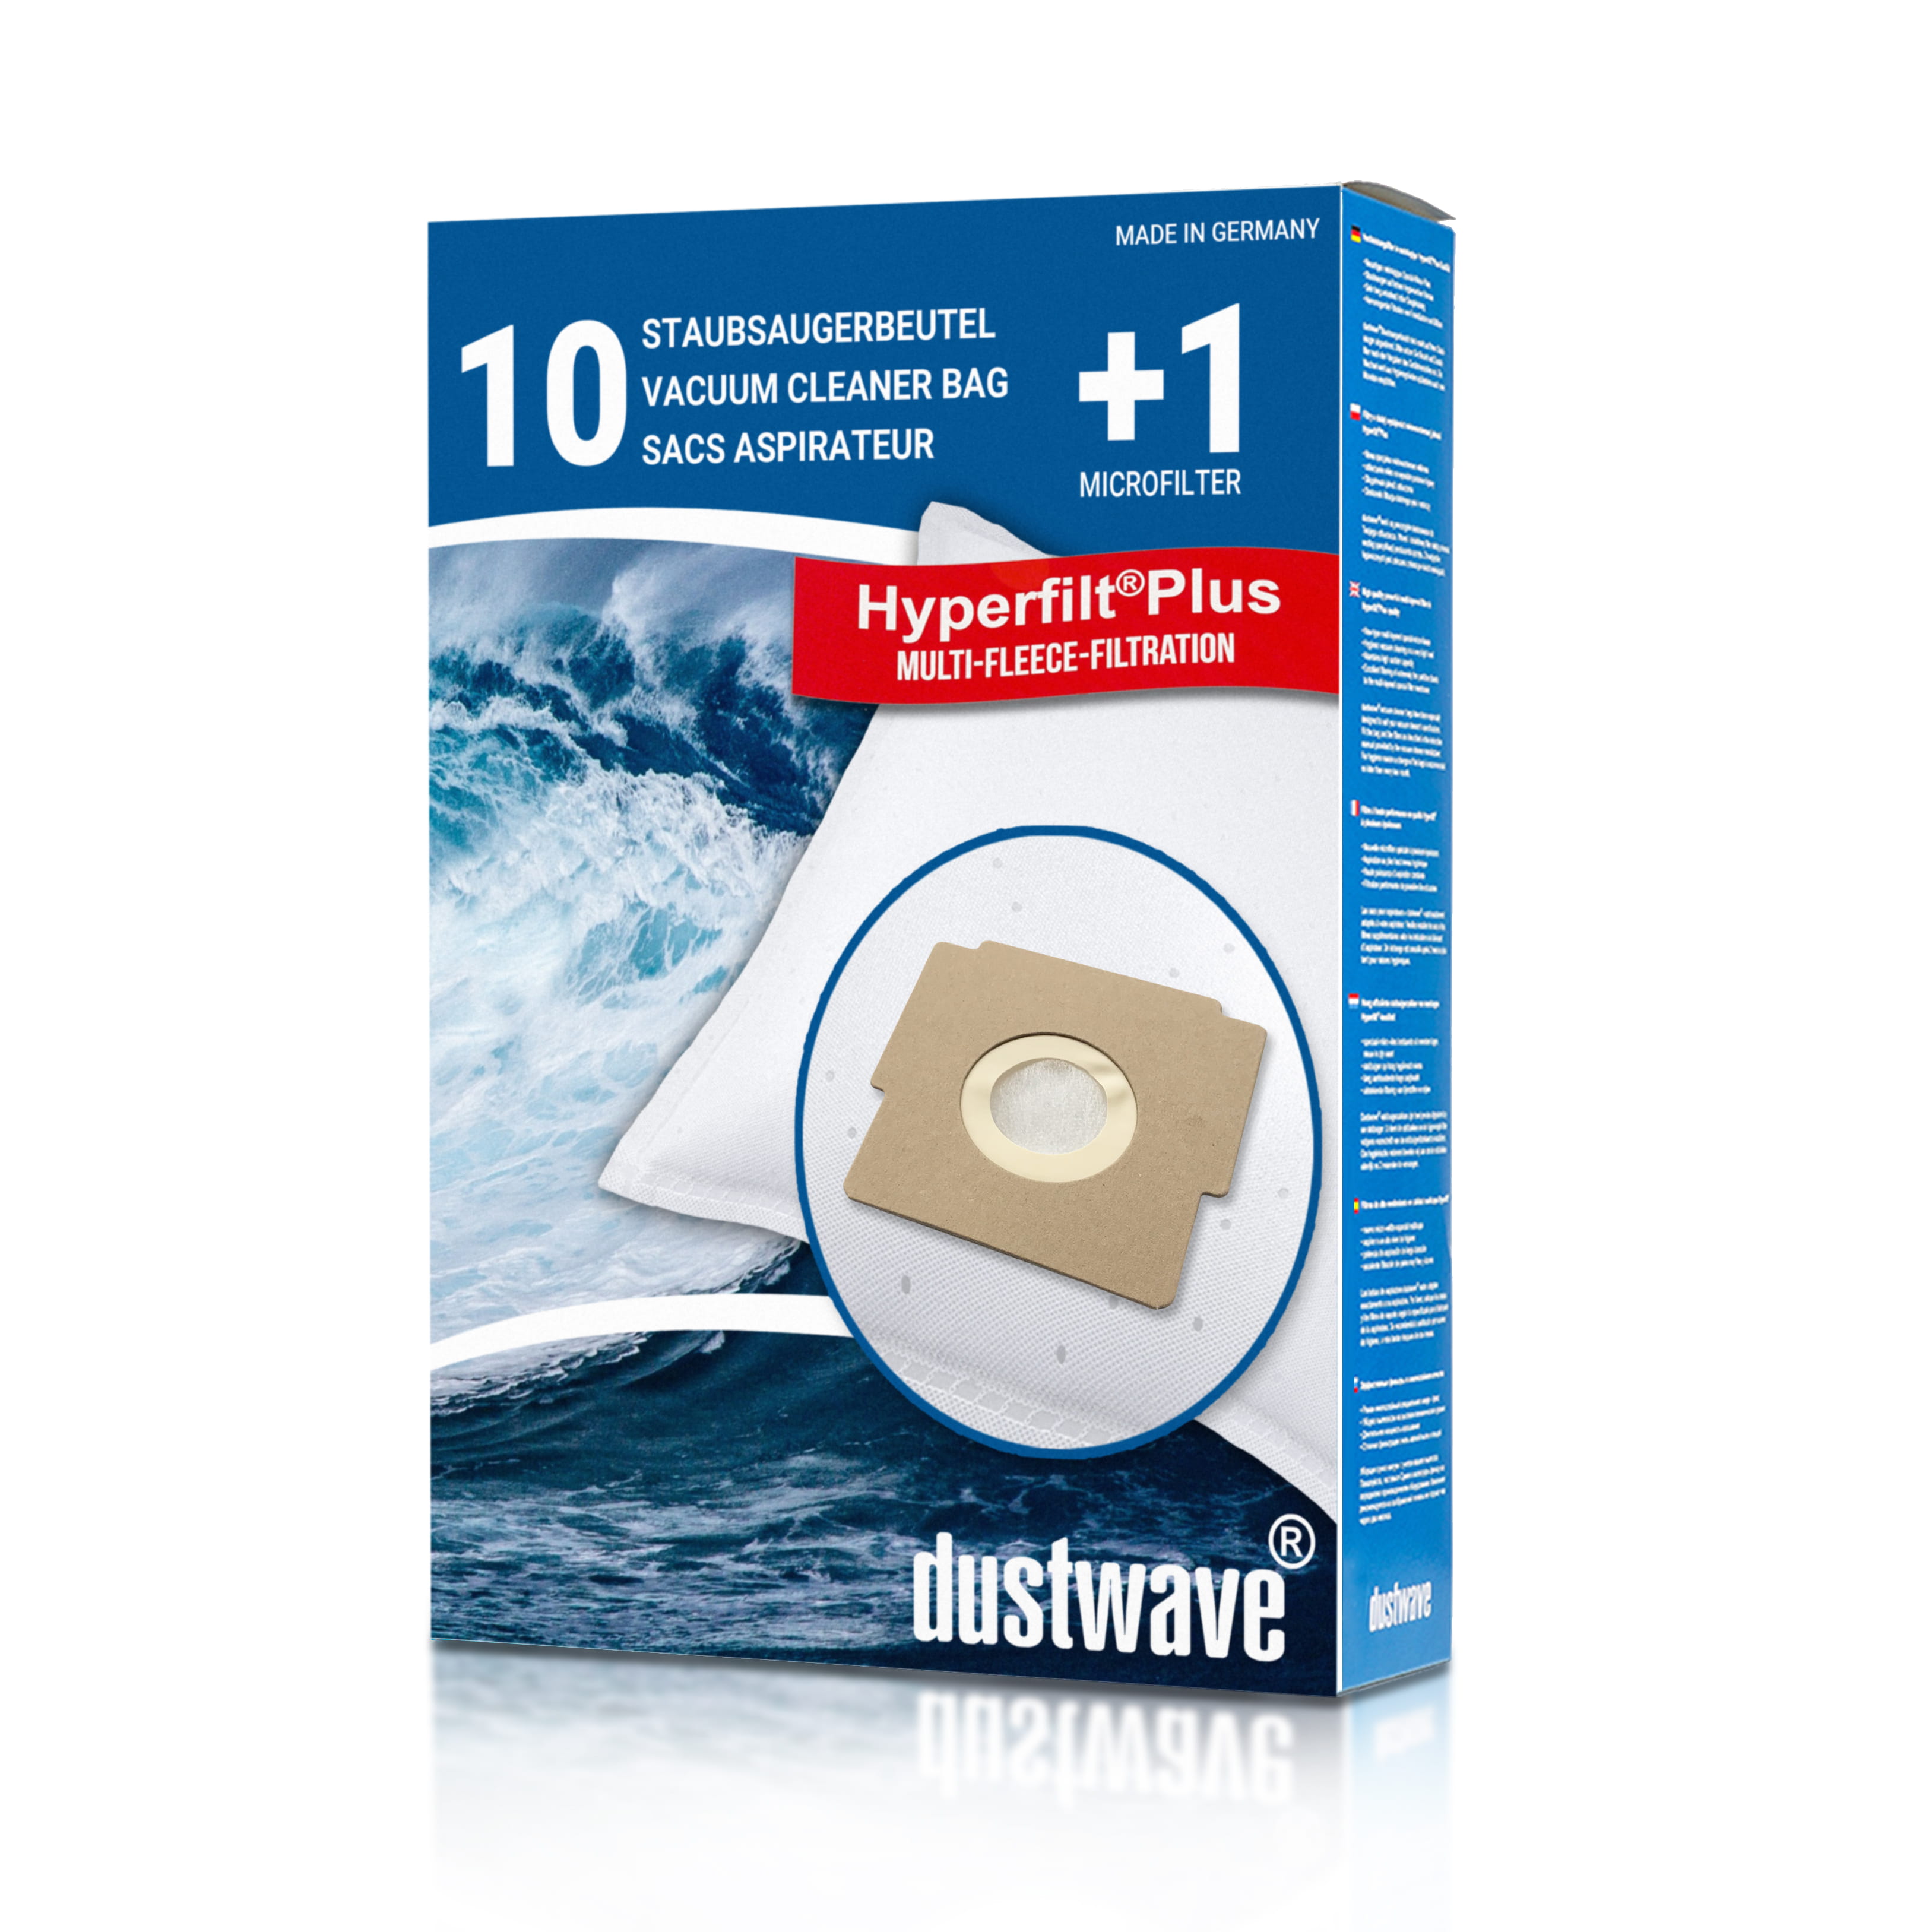 Dustwave® 10 Staubsaugerbeutel für Bestron K 00018 / K00018 - hocheffizient, mehrlagiges Mikrovlies mit Hygieneverschluss - Made in Germany